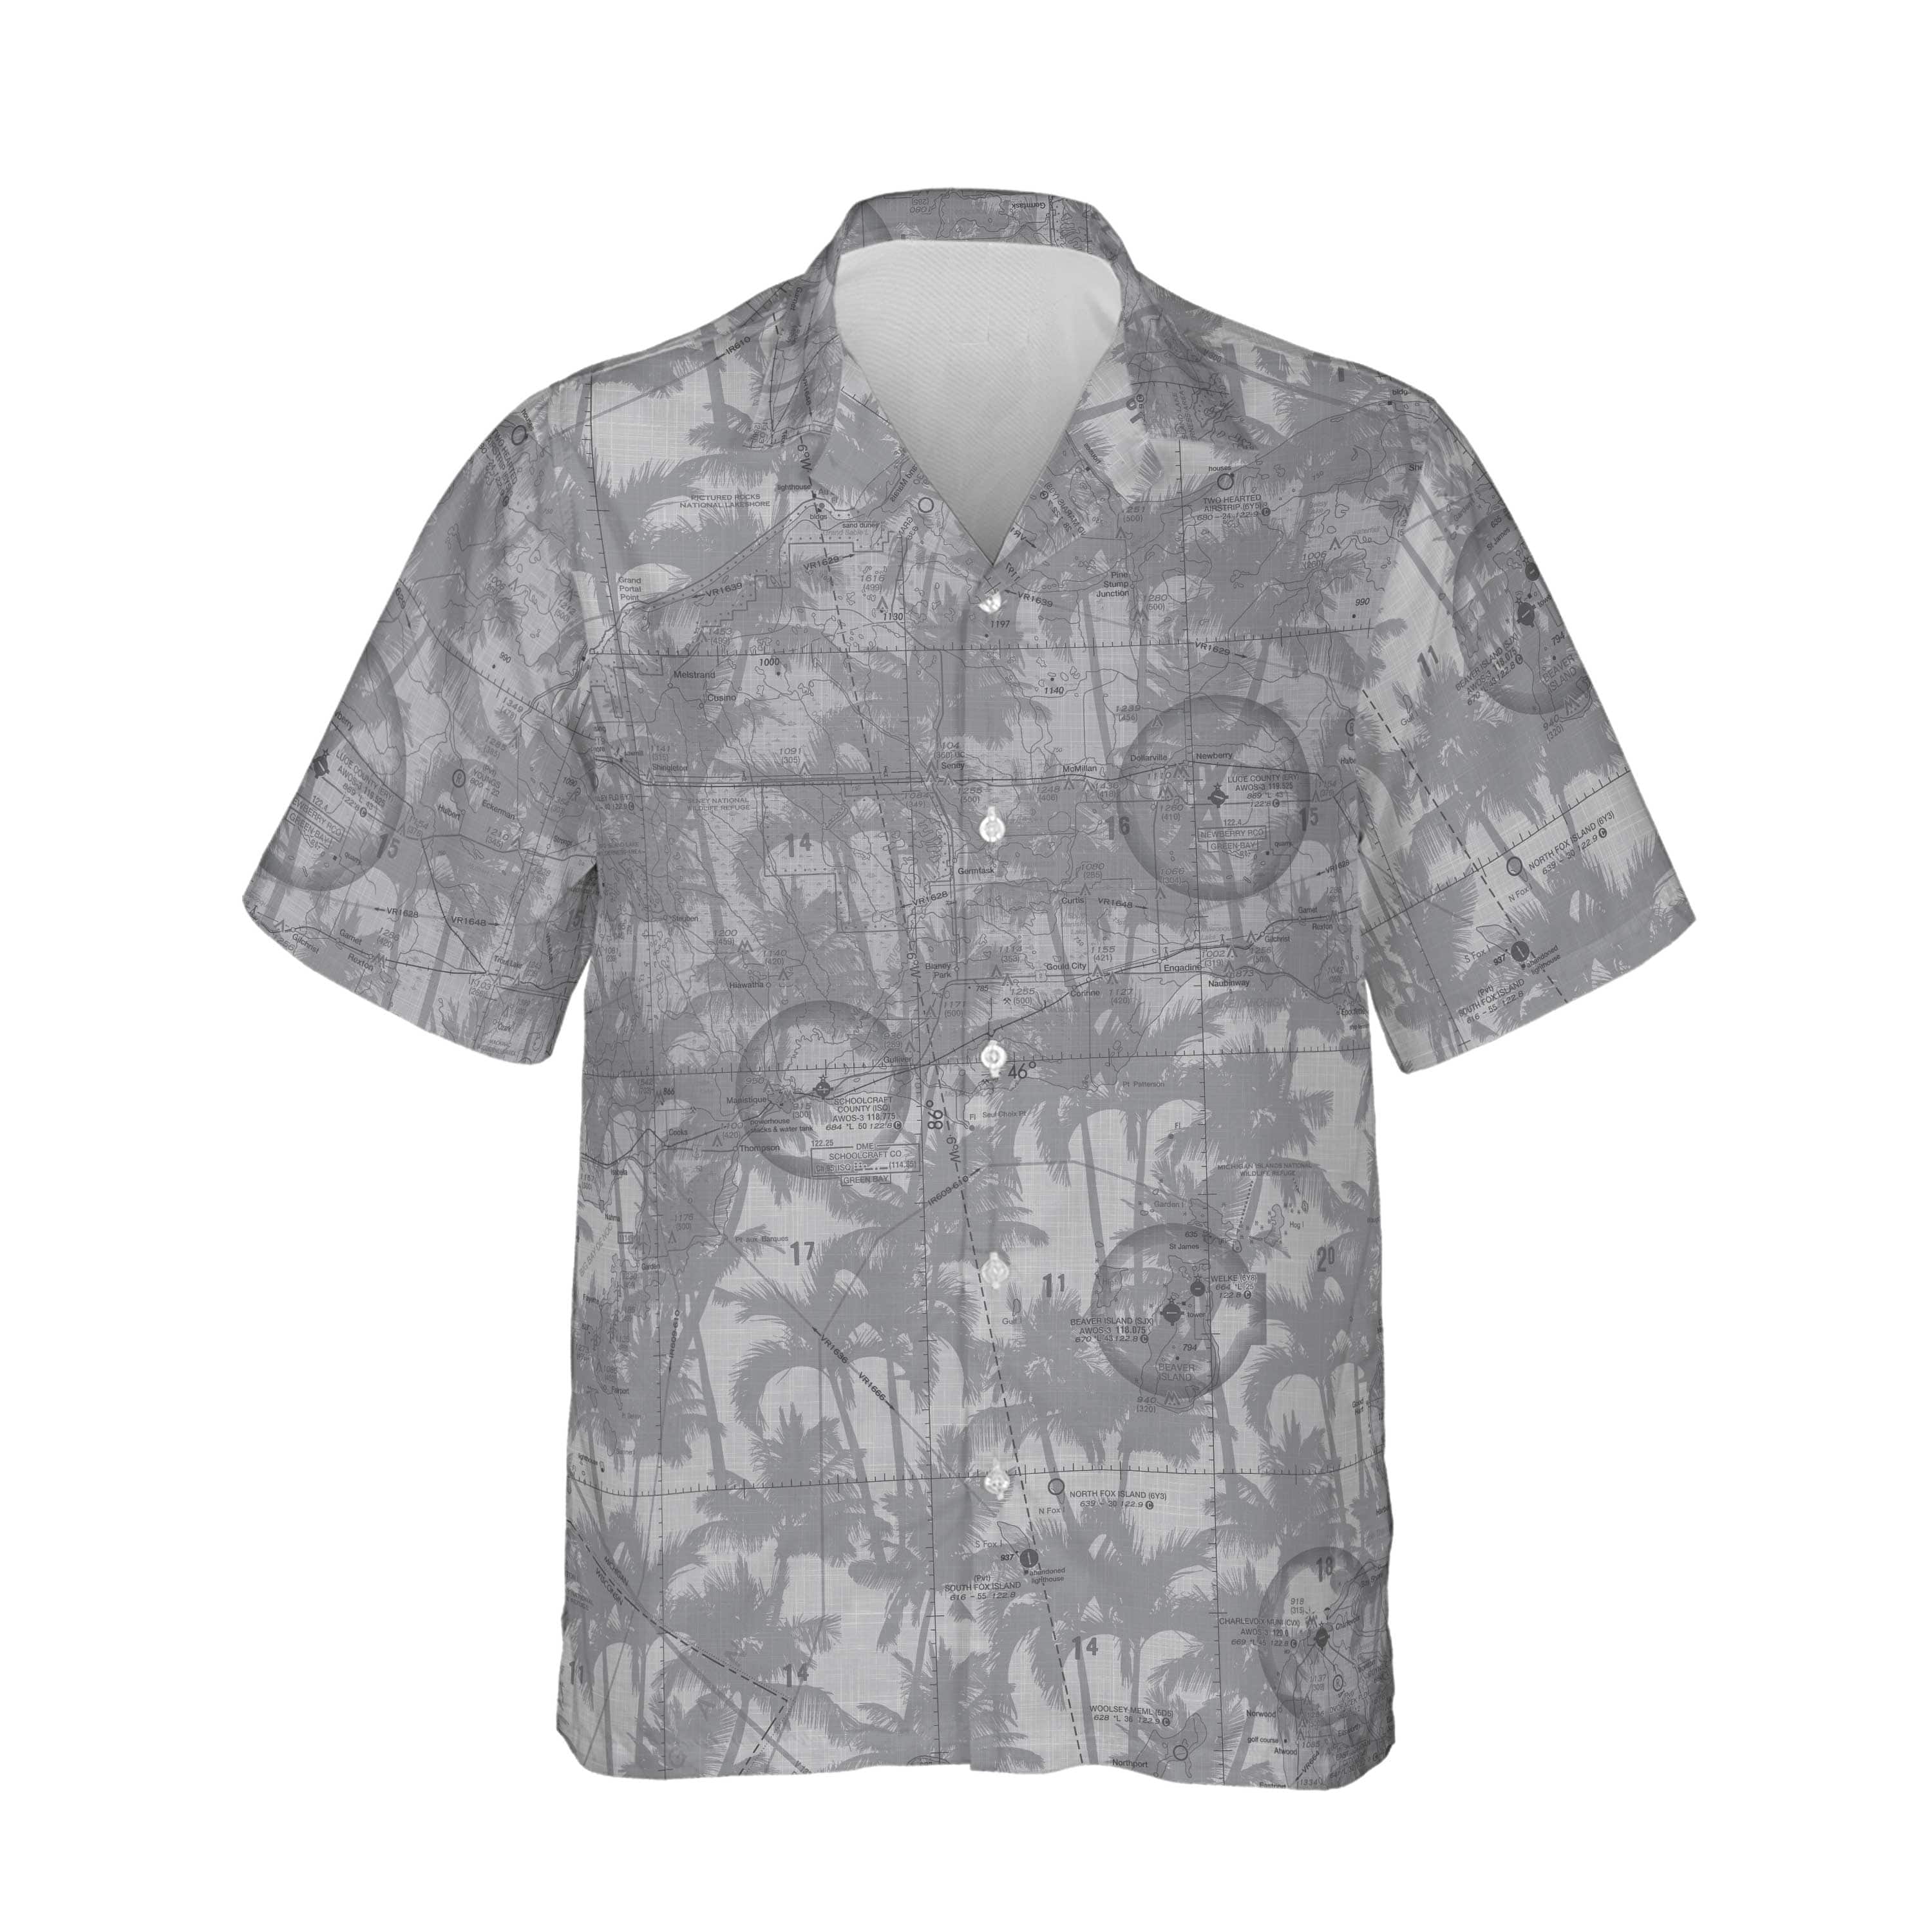 AOP Hawaiian Shirt The Newberry Overcast Palms Shirt